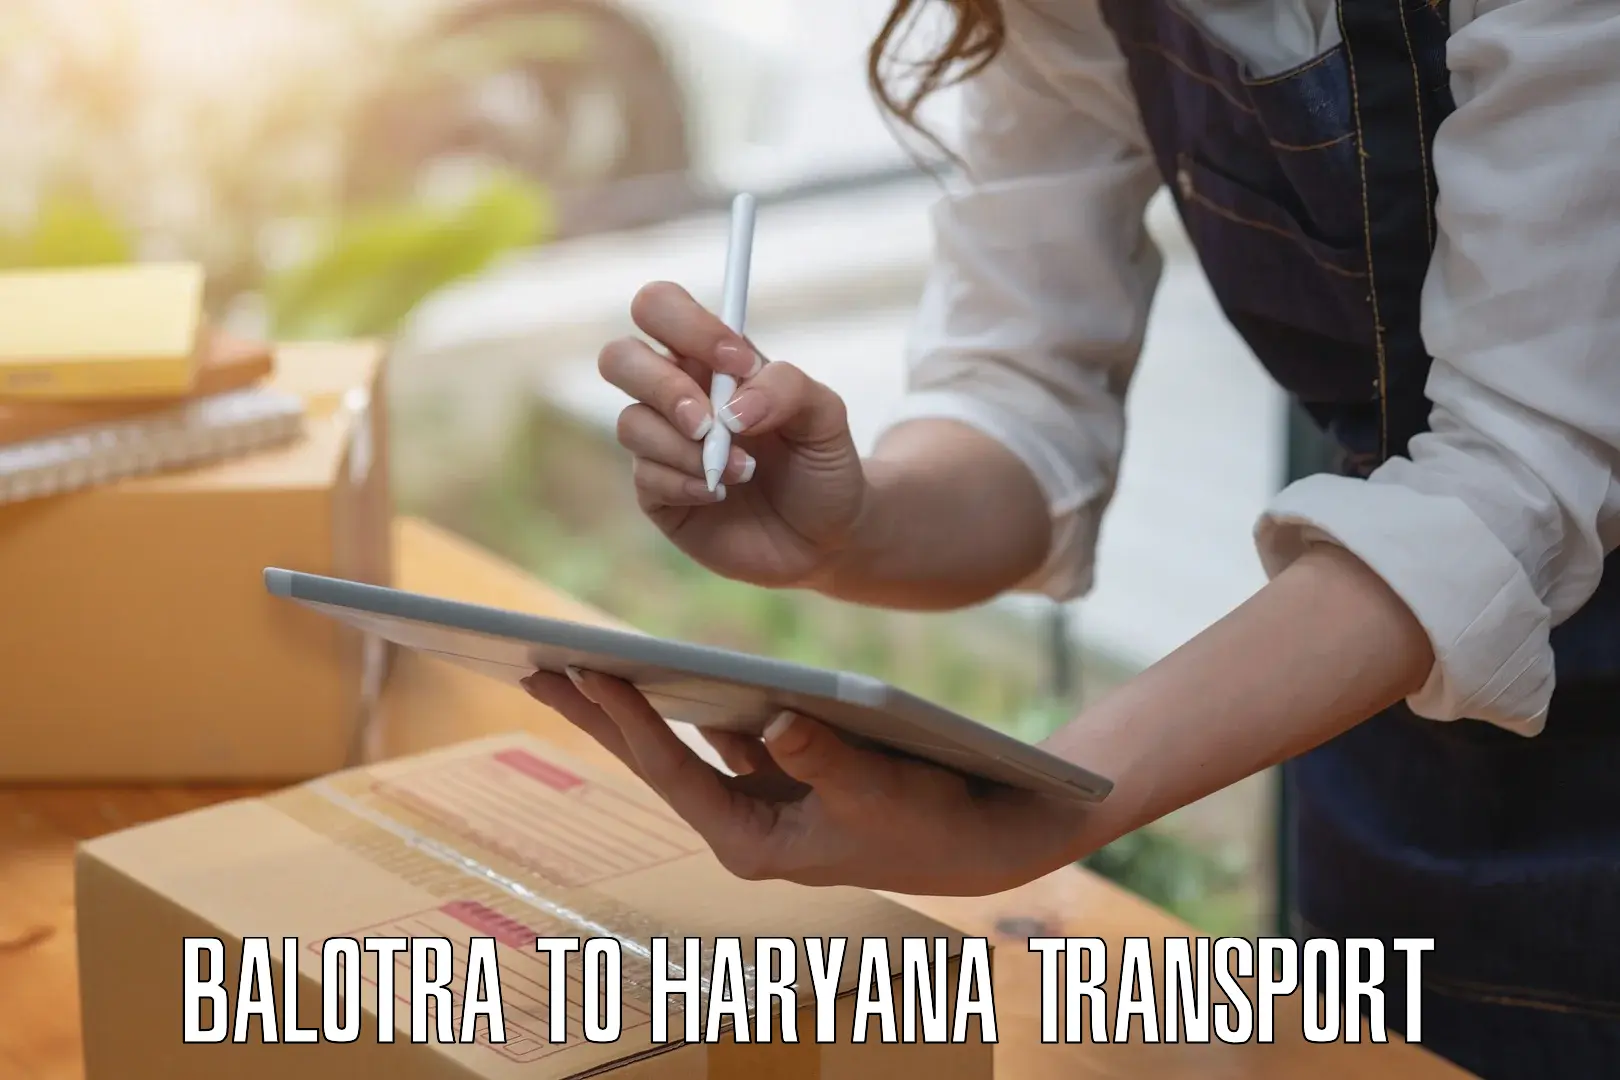 Daily transport service Balotra to Samalkha